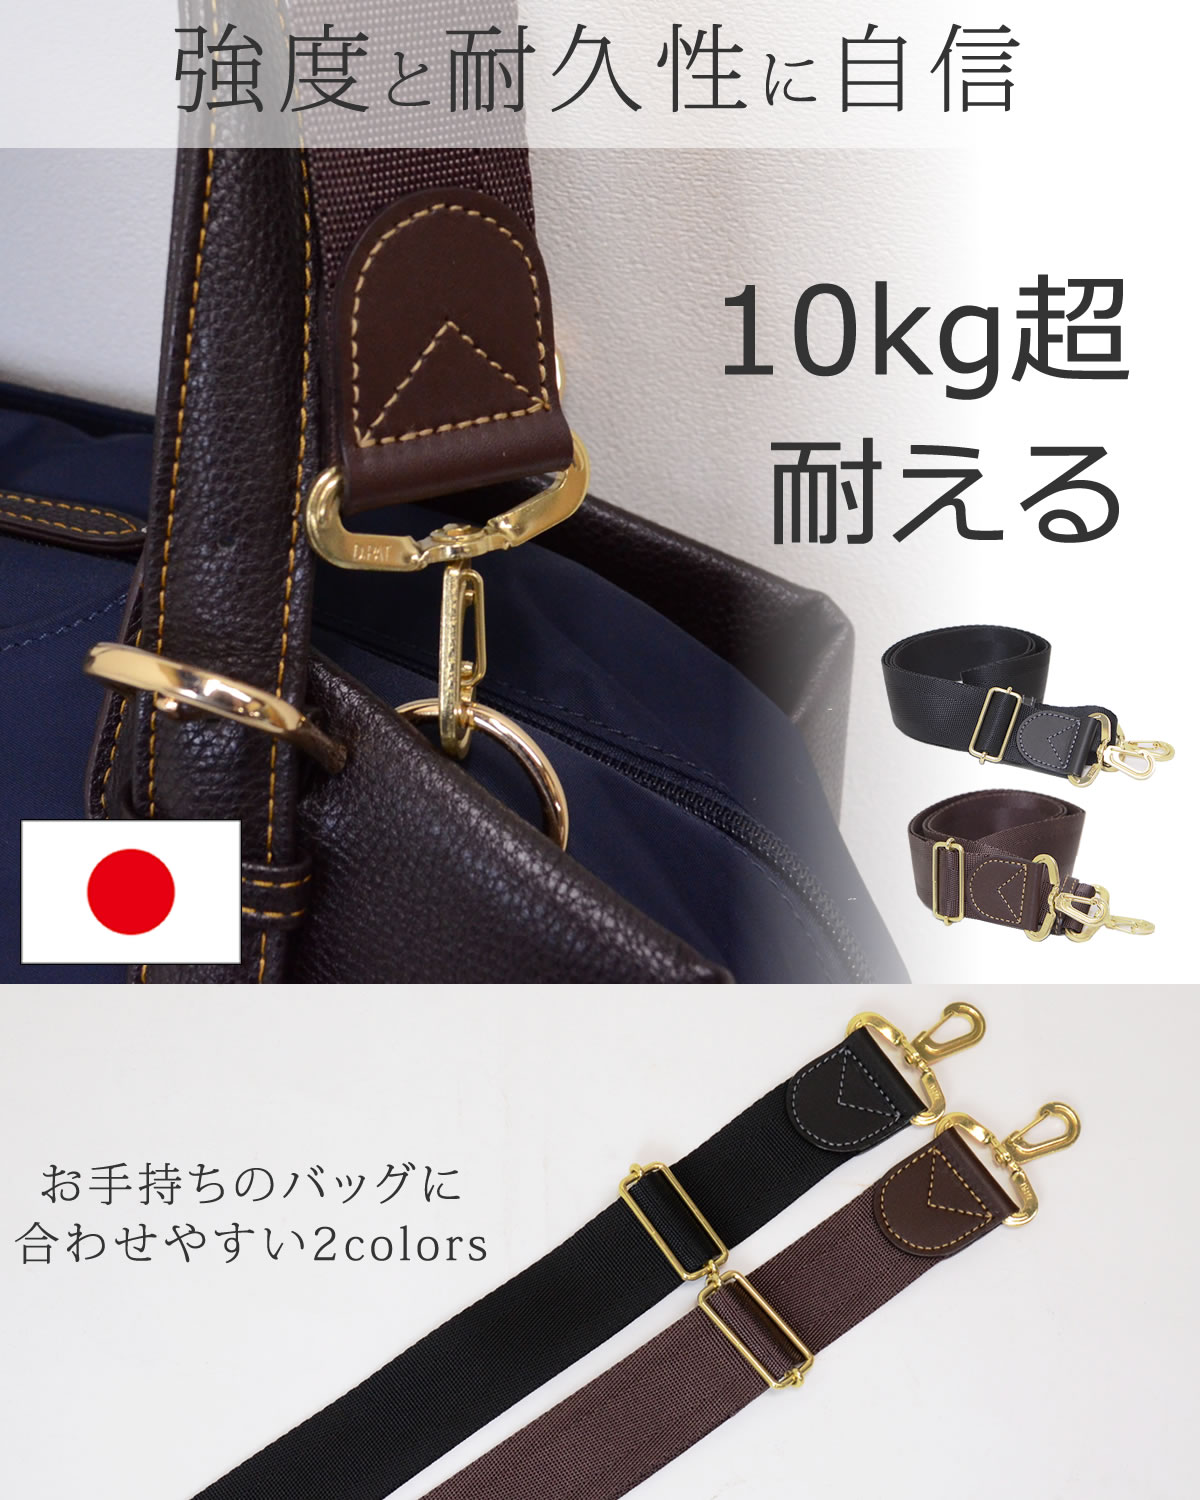 ショルダーベルト 日本製 目々澤鞄 高品質 耐久性 ビジネスバッグ